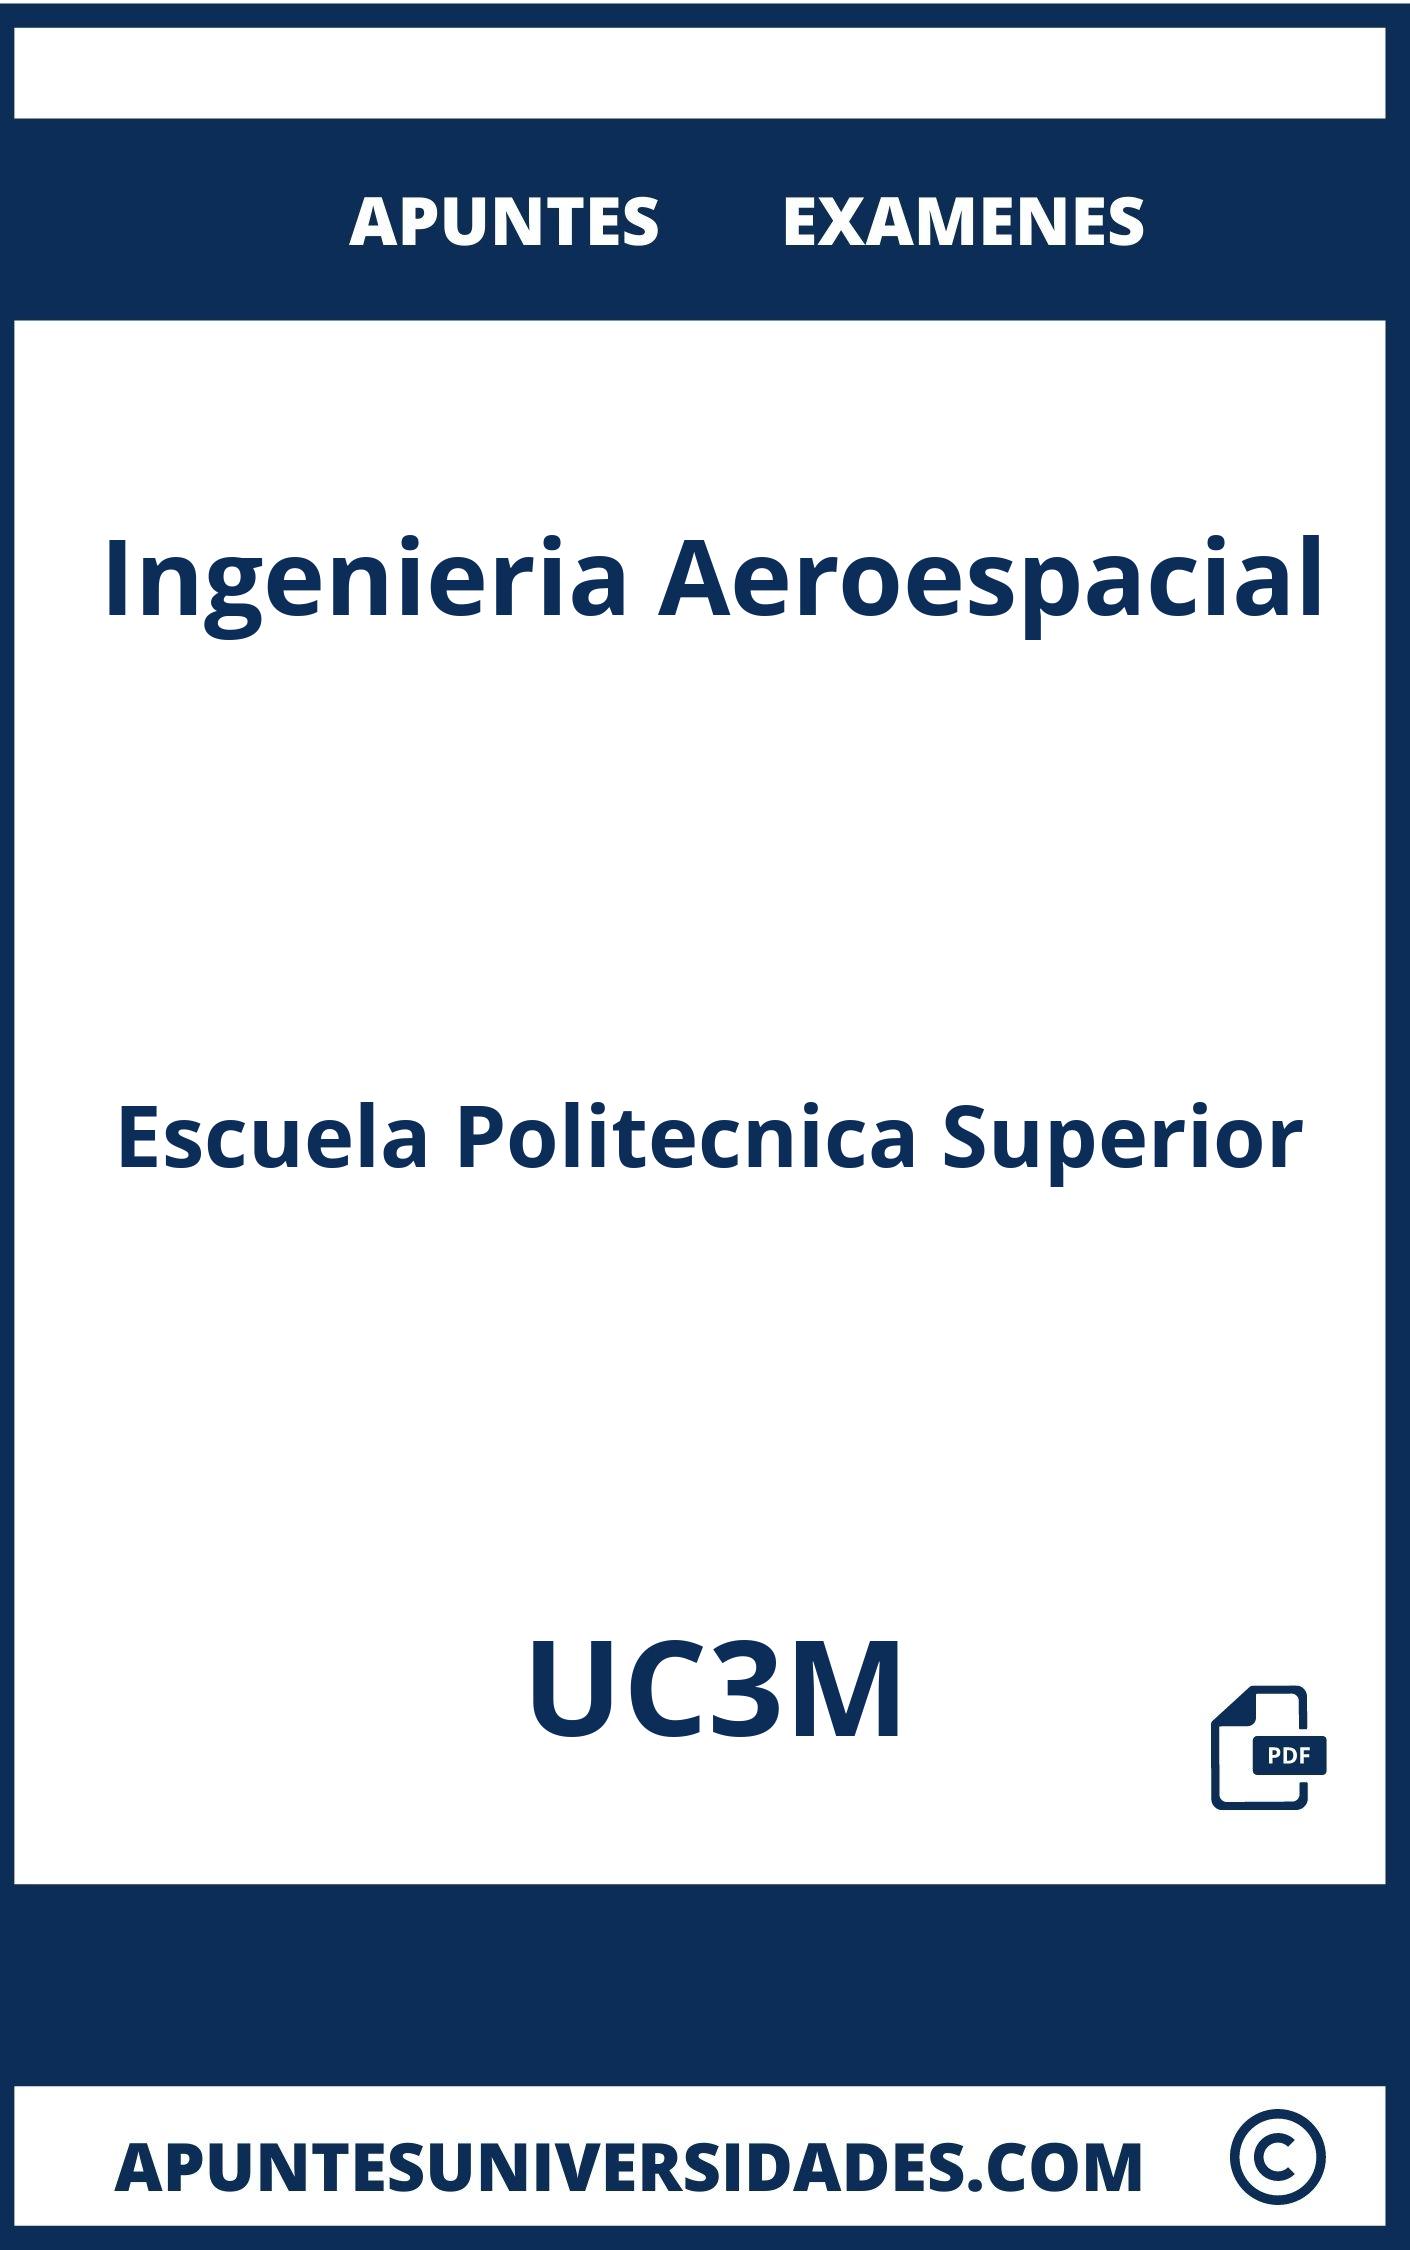 Examenes Ingenieria Aeroespacial UC3M y Apuntes